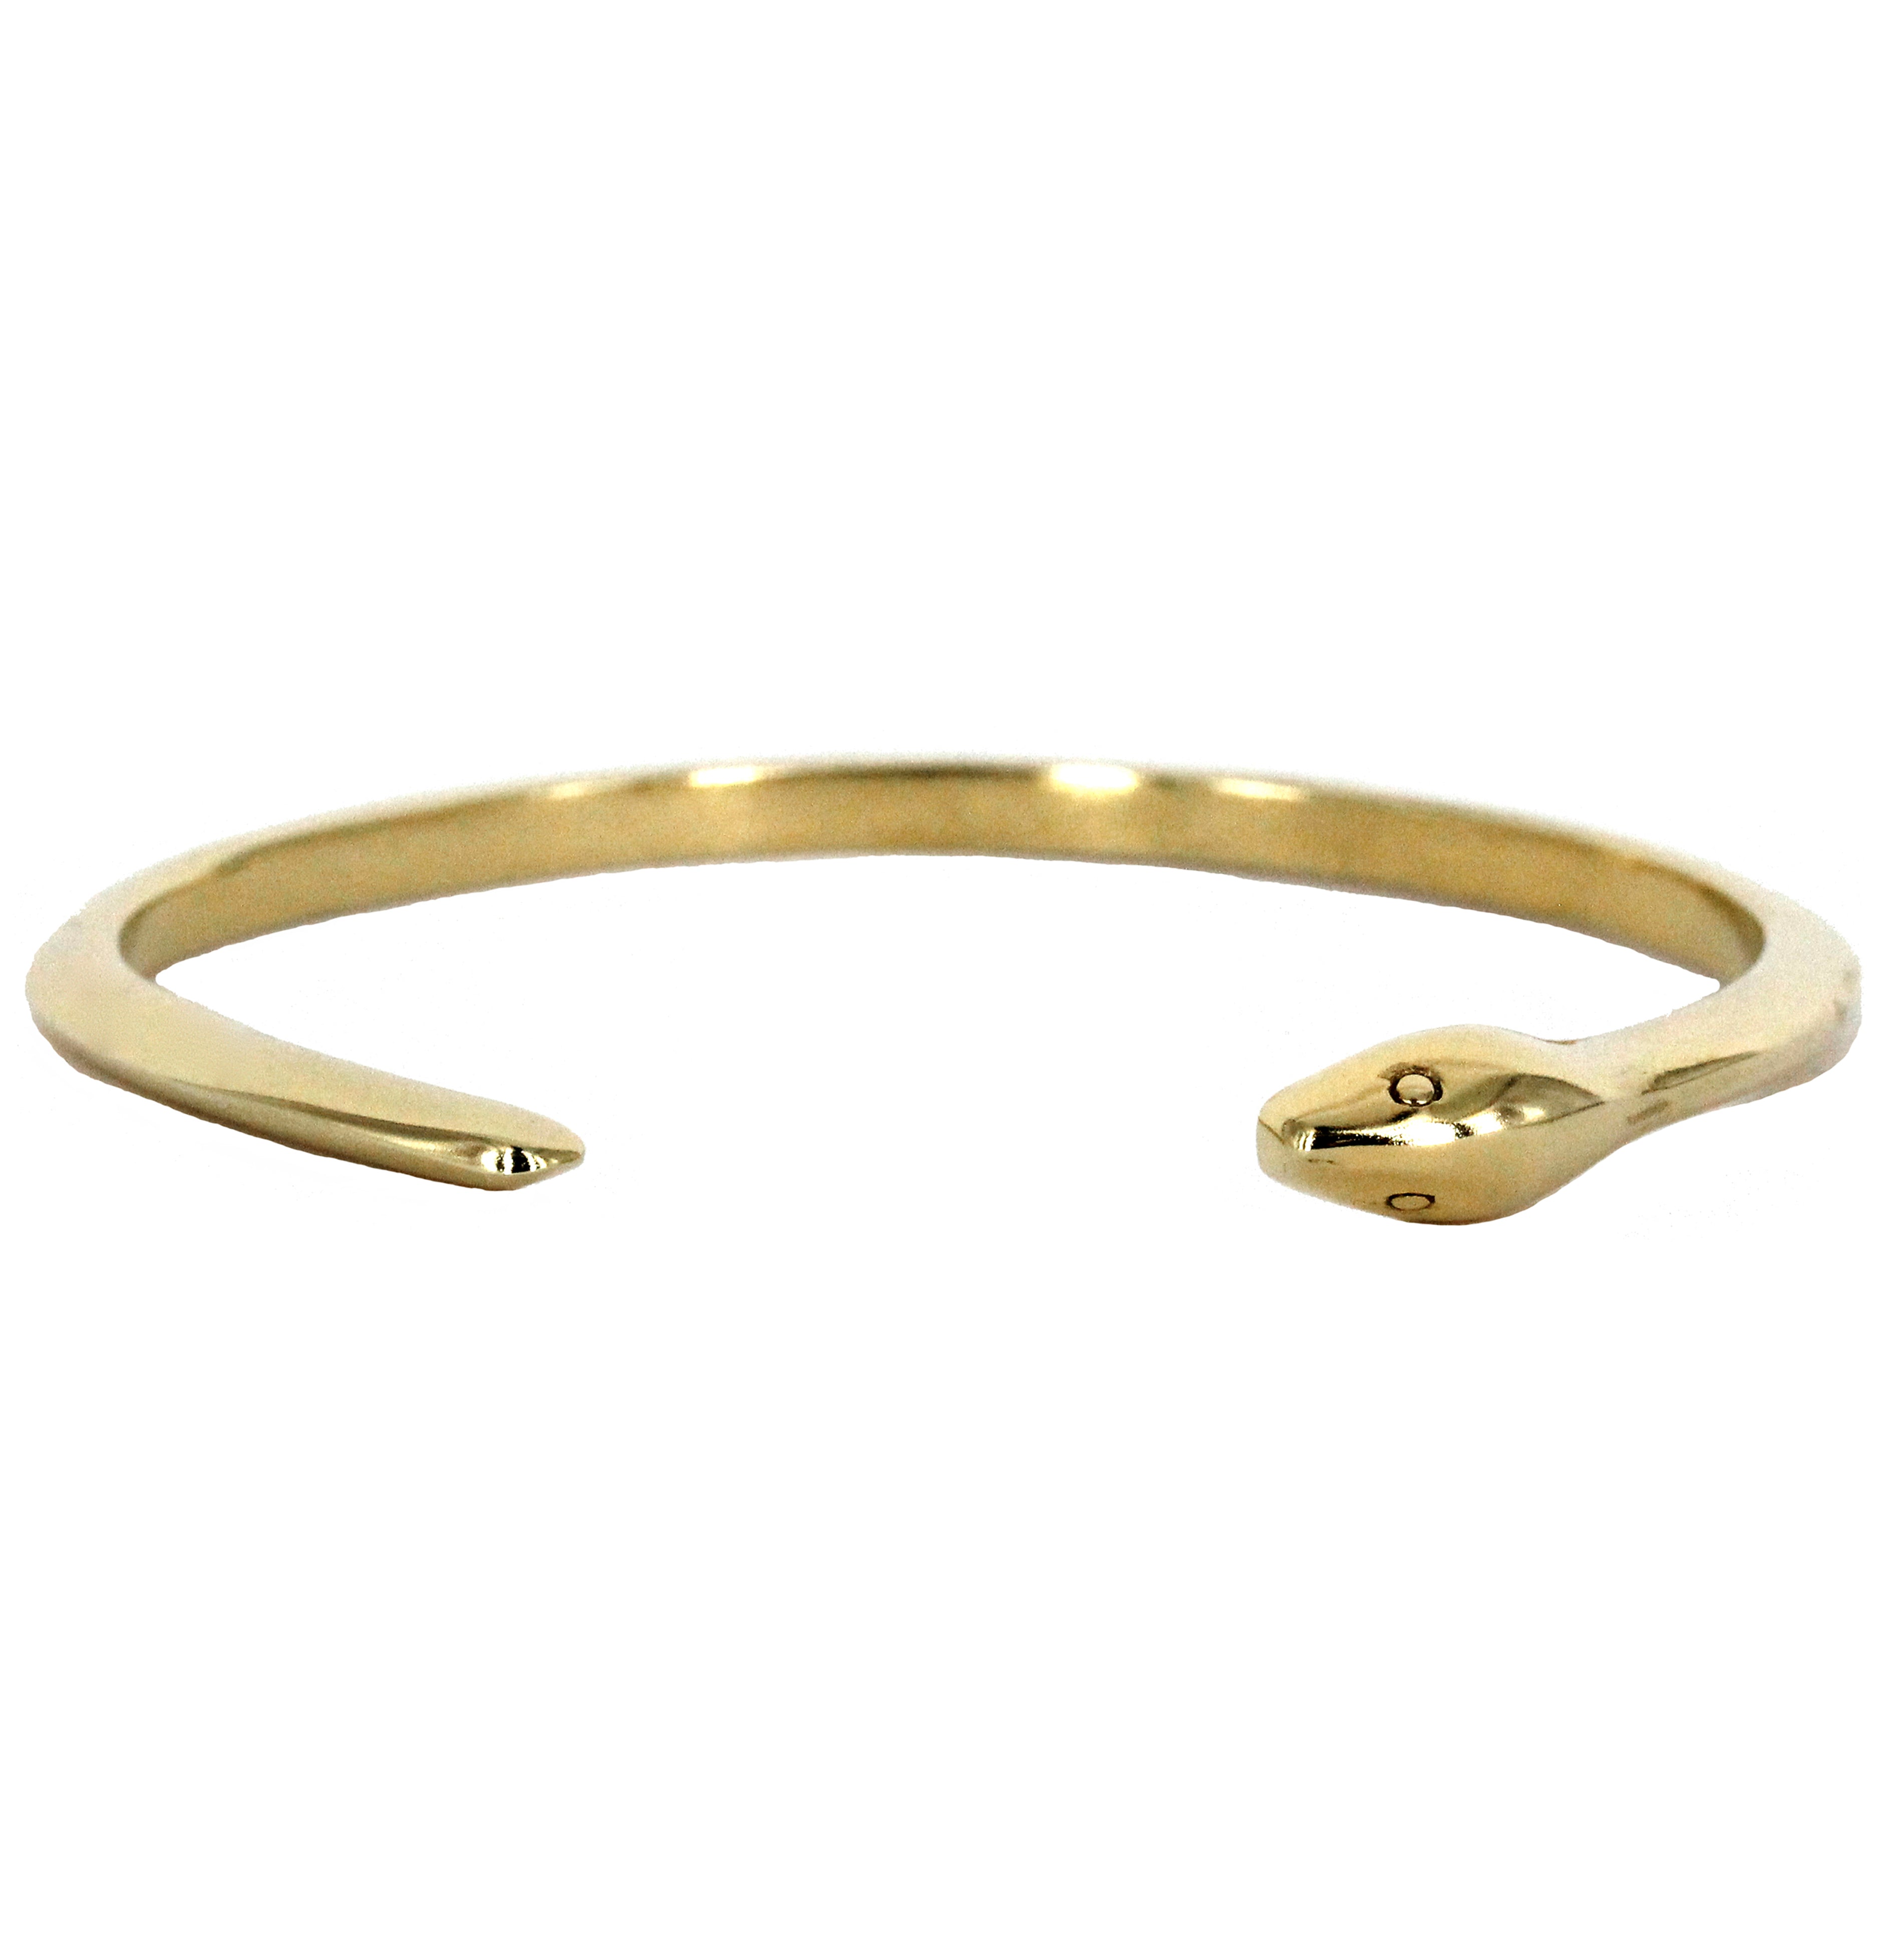 Gold snake bracelet Ouroboros Snake jewelry for women - Inspire Uplift